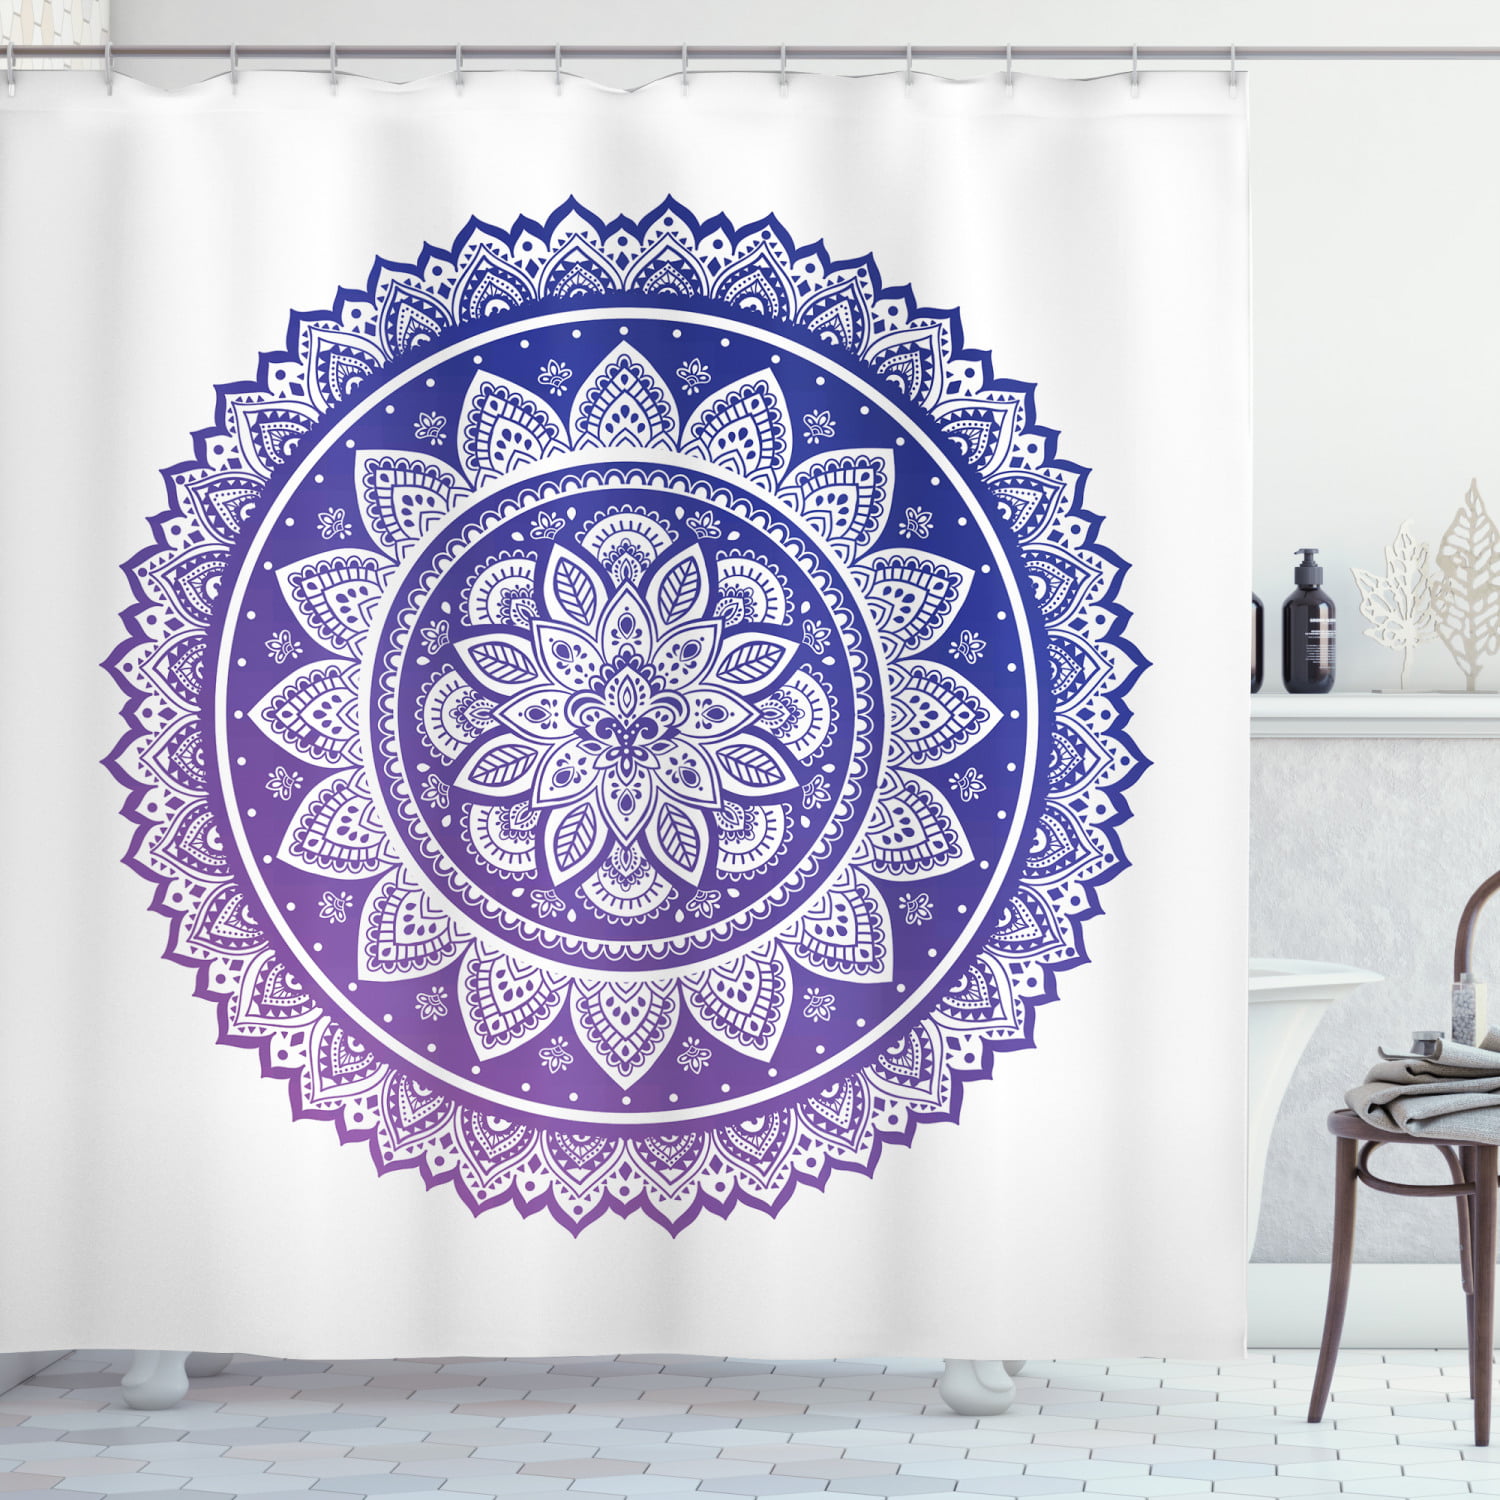 Details about   Mandala Flower Shower Curtain Sets Bohemian Yoga Mystic Zen for Bathroom Decor 